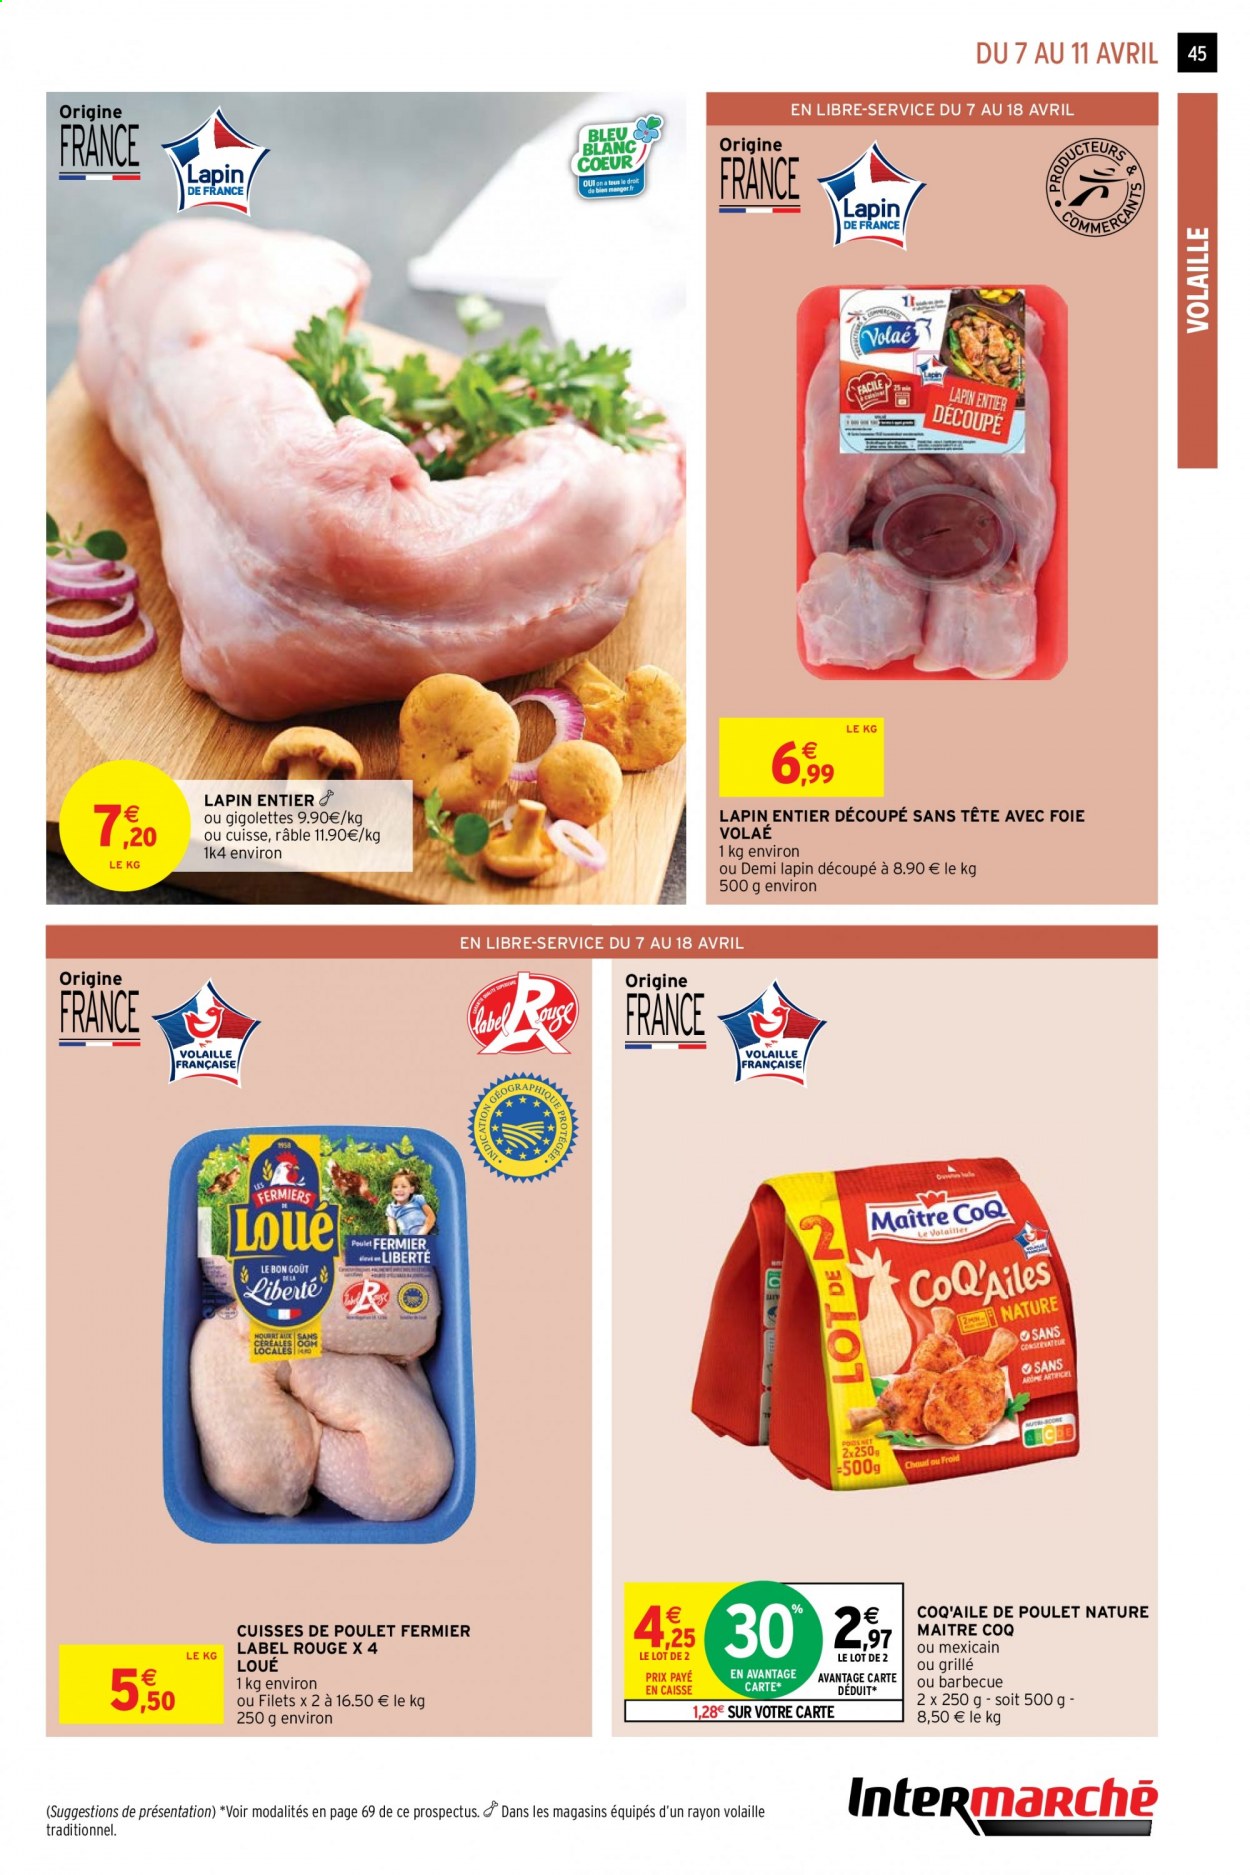 thumbnail - Catalogue Intermarché Super - 07/04/2021 - 18/04/2021 - Produits soldés - Maître CoQ, cuisses de poulet, viande de poulet, lapin entier, viande de lapin, barbecue. Page 45.